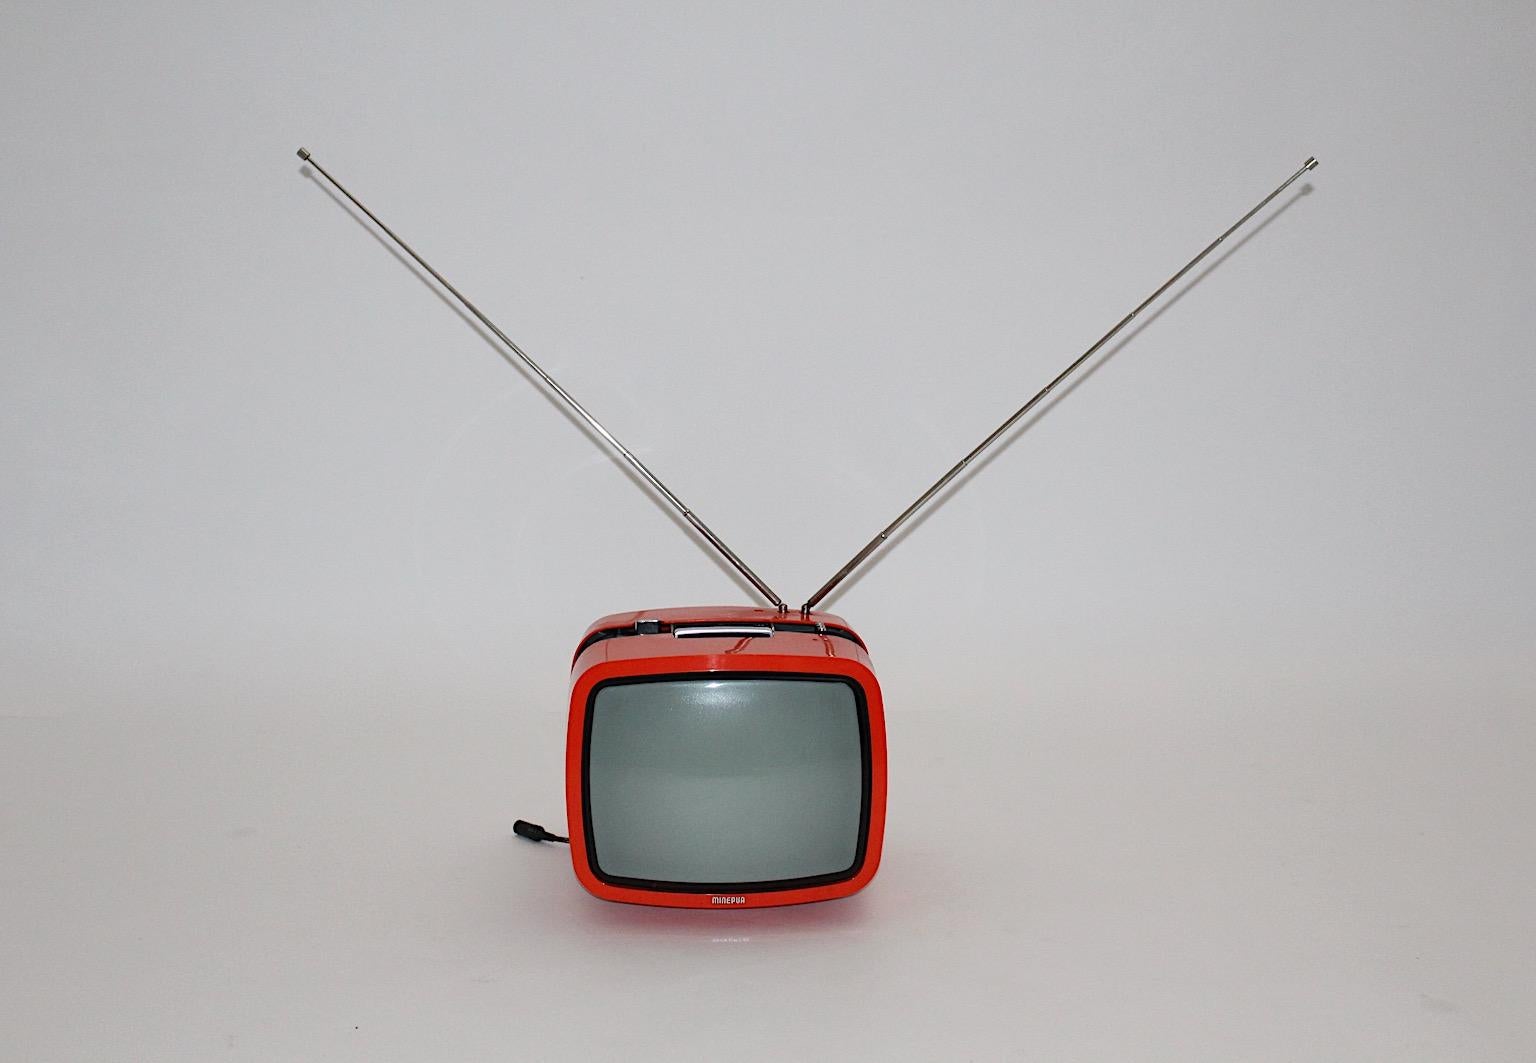 Télévision vintage orange de l'ère spatiale d'après le modèle en plastique Ikaro de Minerva, années 1970, Autriche.
Ce téléviseur portable avec un boîtier en plastique orange de Minerva, Autriche, a été fabriqué pour les marchés italien et suisse